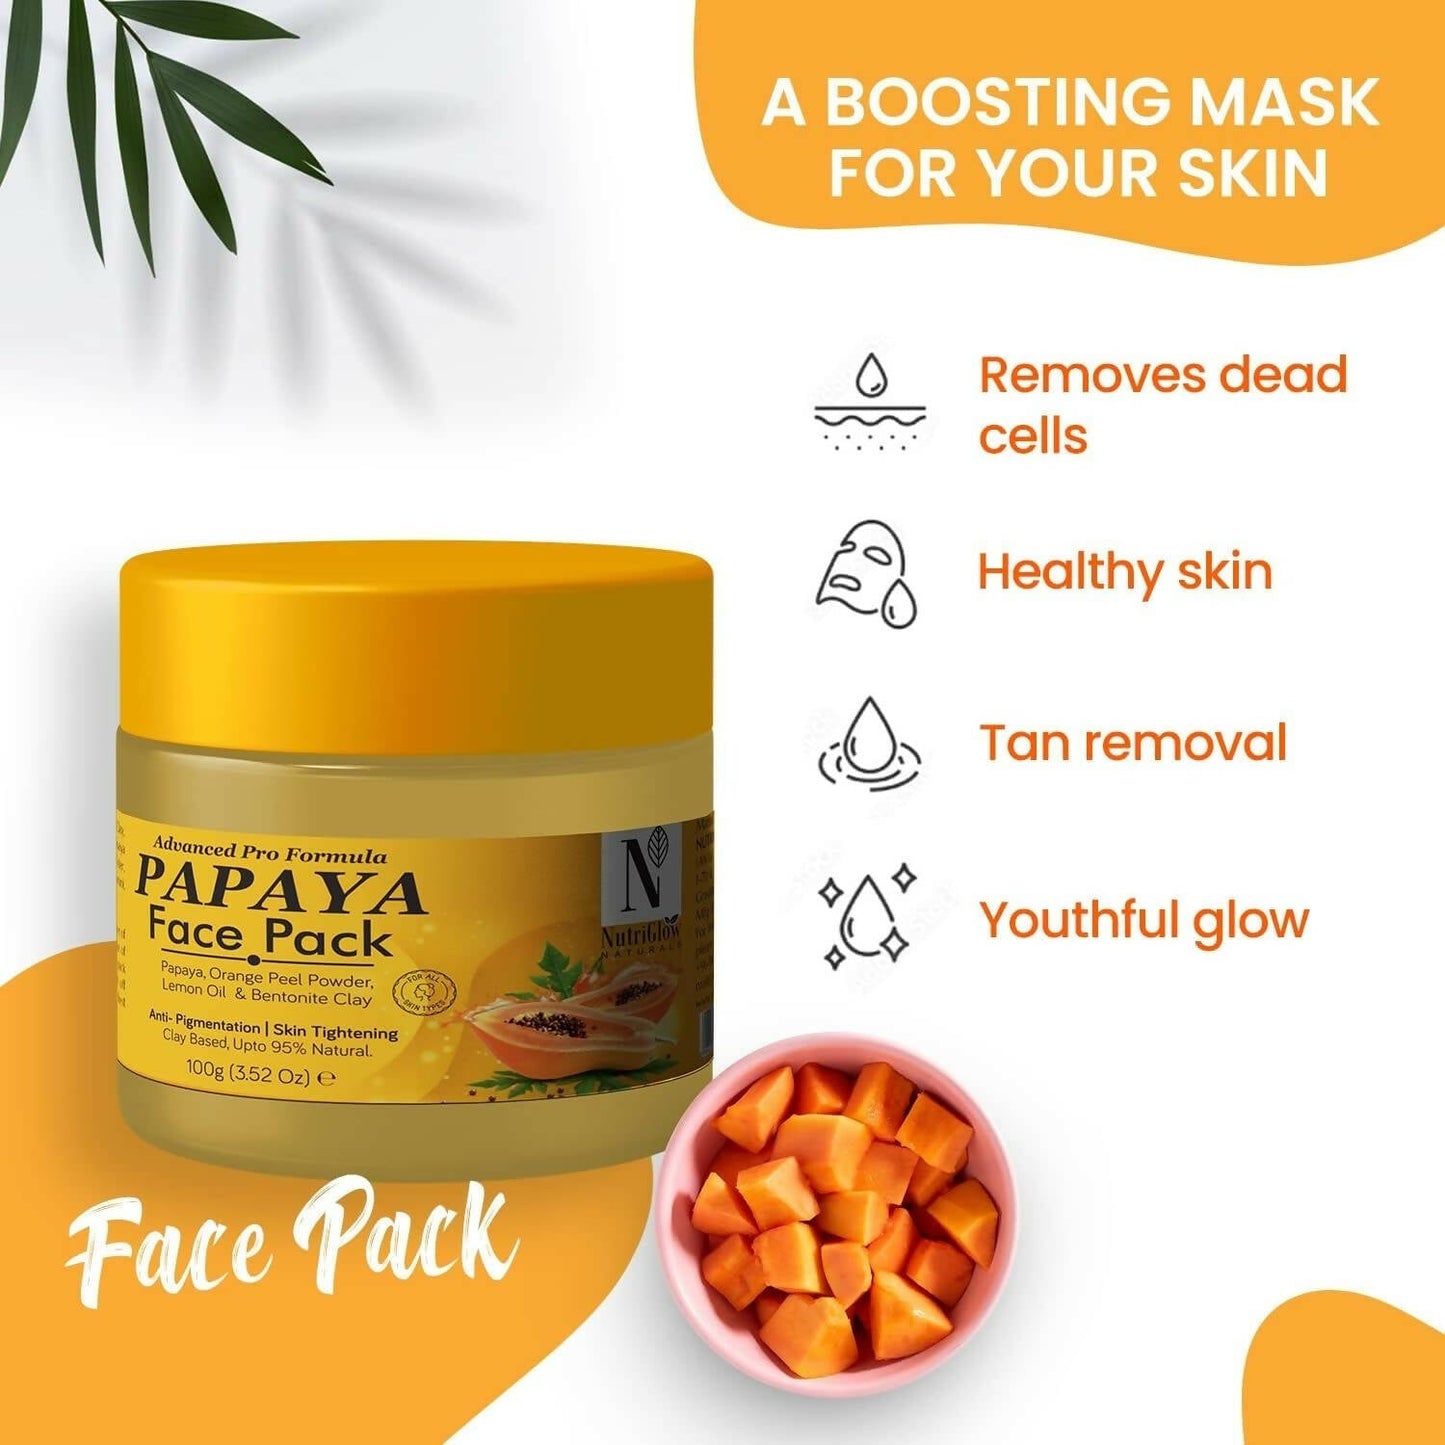 NutriGlow NATURAL'S Advanced Pro Formula Papaya Face pack